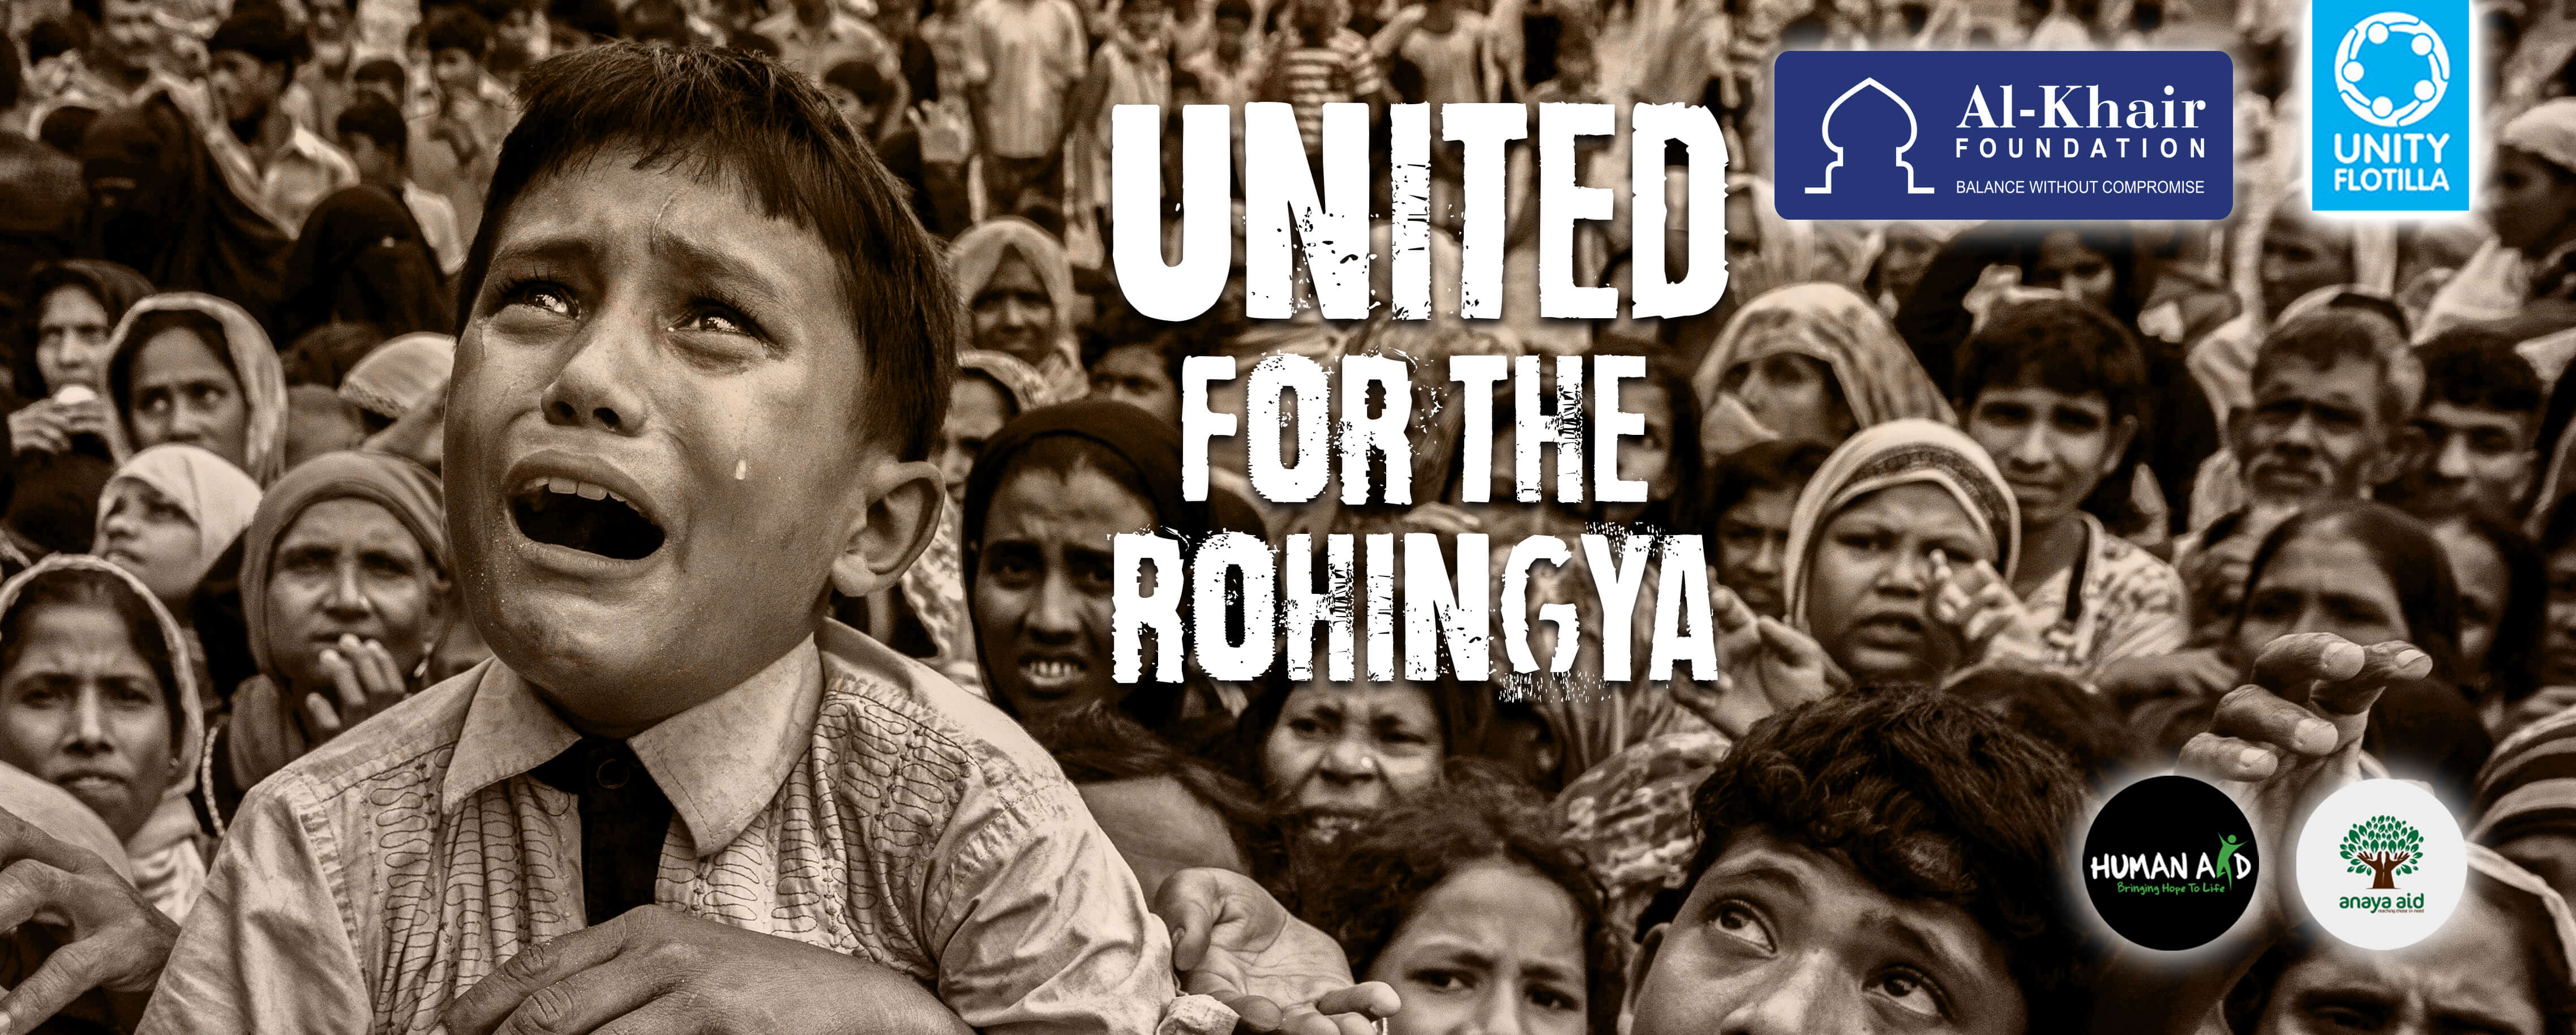 United for the Rohingya 02 V5